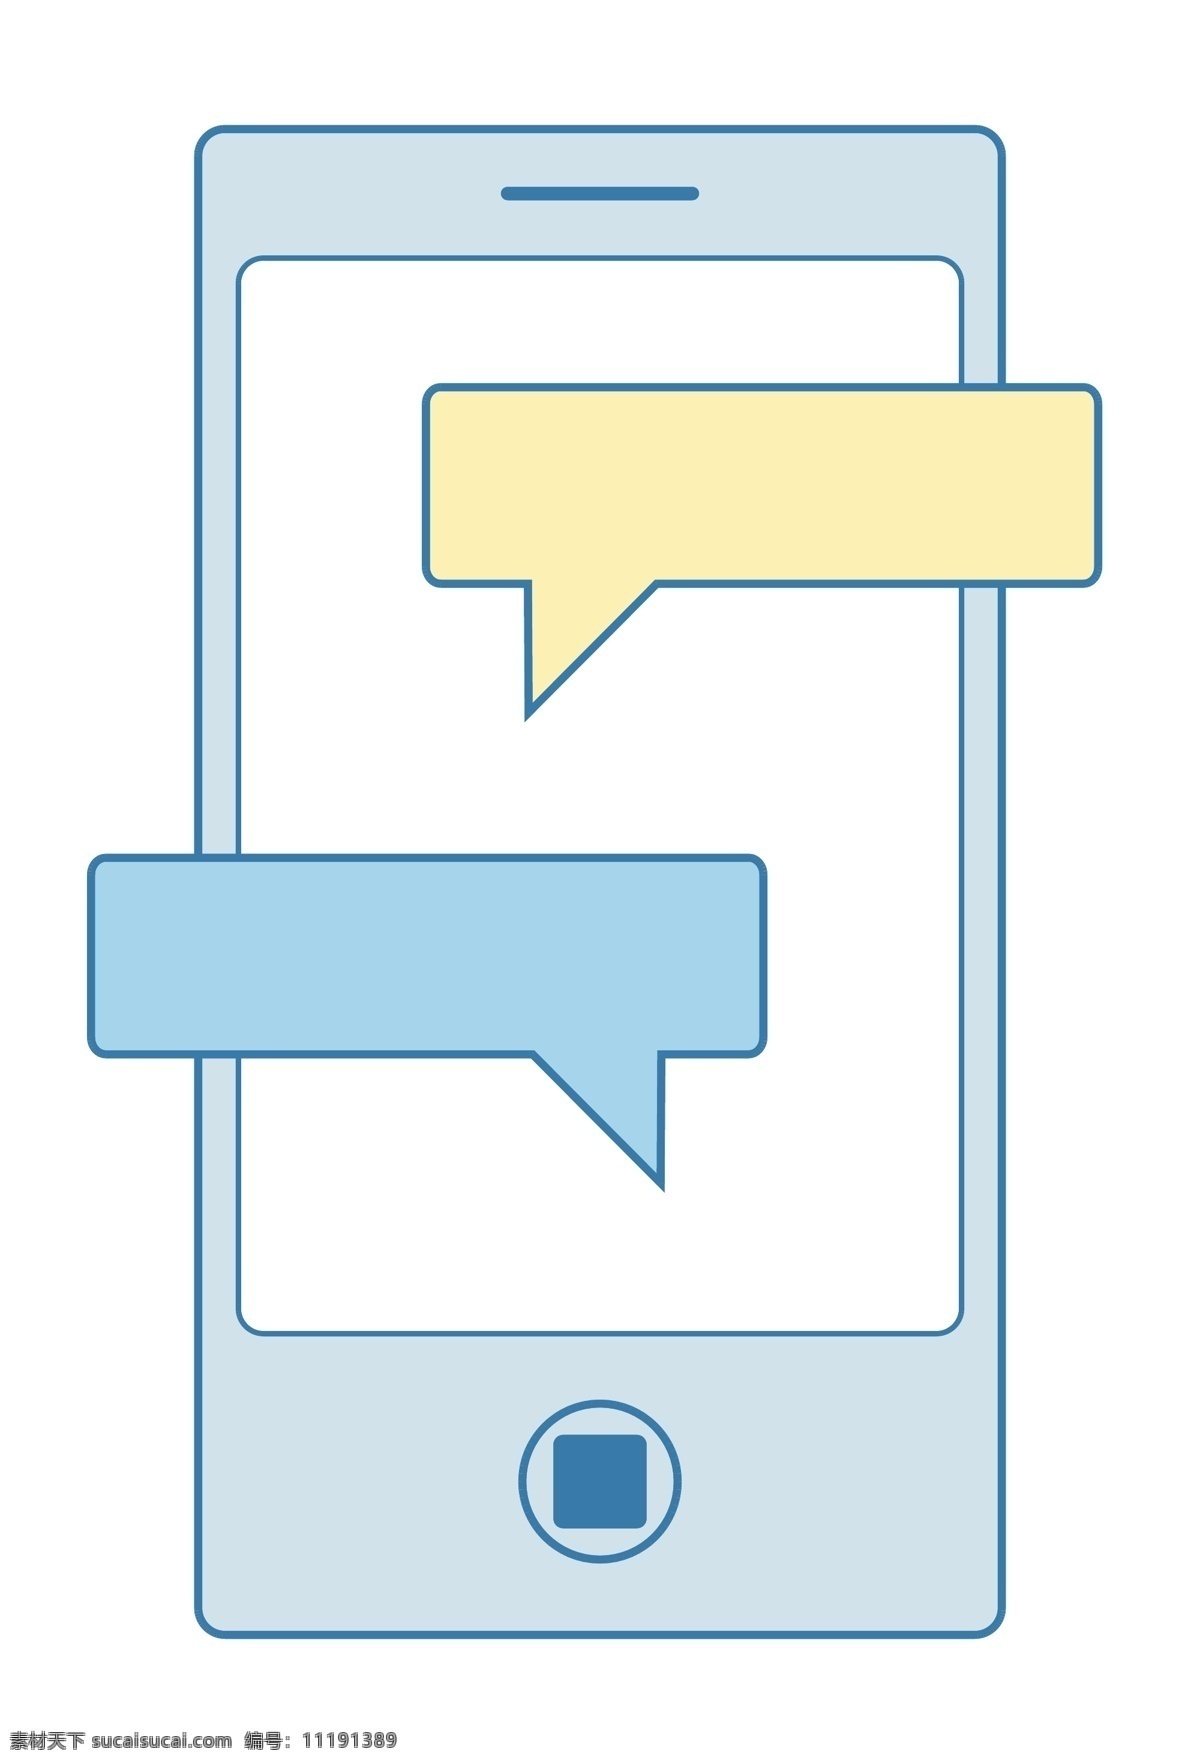 蓝色 手机 扁平 卡通图标 对话框 手机销售 矢量图 扁平化 蓝色手机 平板 icon 手机营销